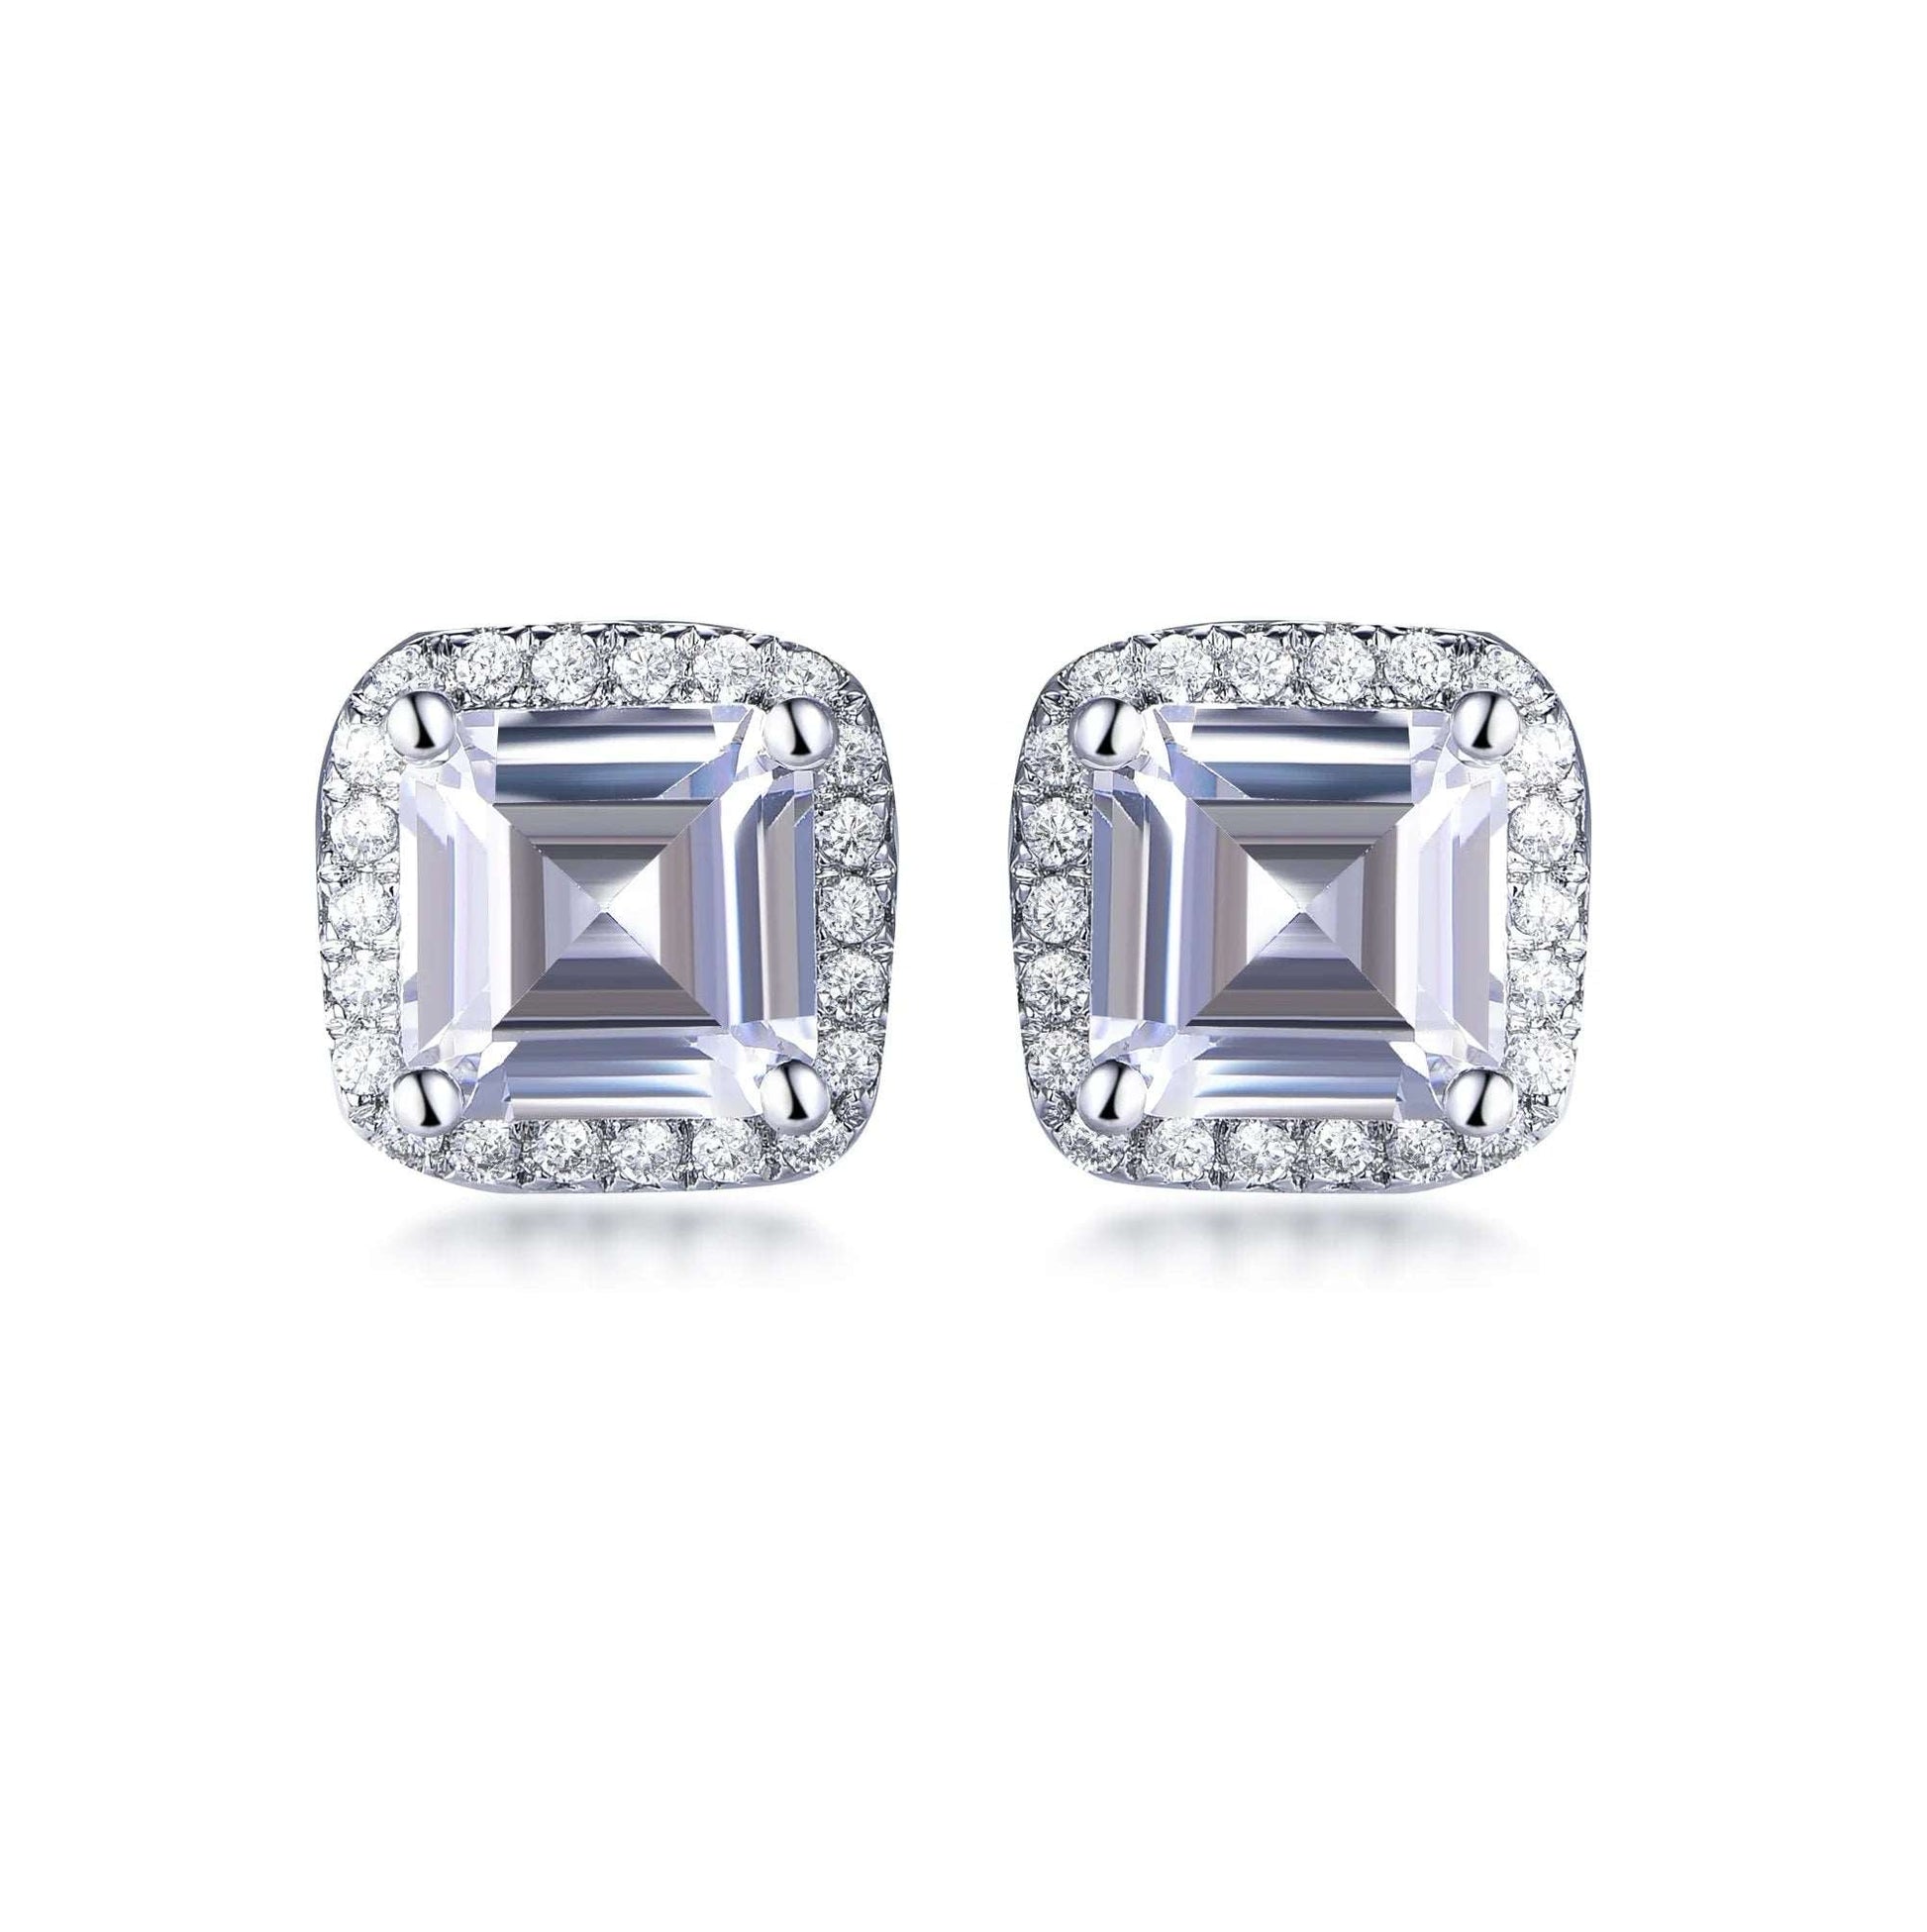 2023 Earrings Jewelry Zircon Earrings Women's Sterling silver Round Clear Cubic Zirconia Stud Earrings Kirin Jewelry